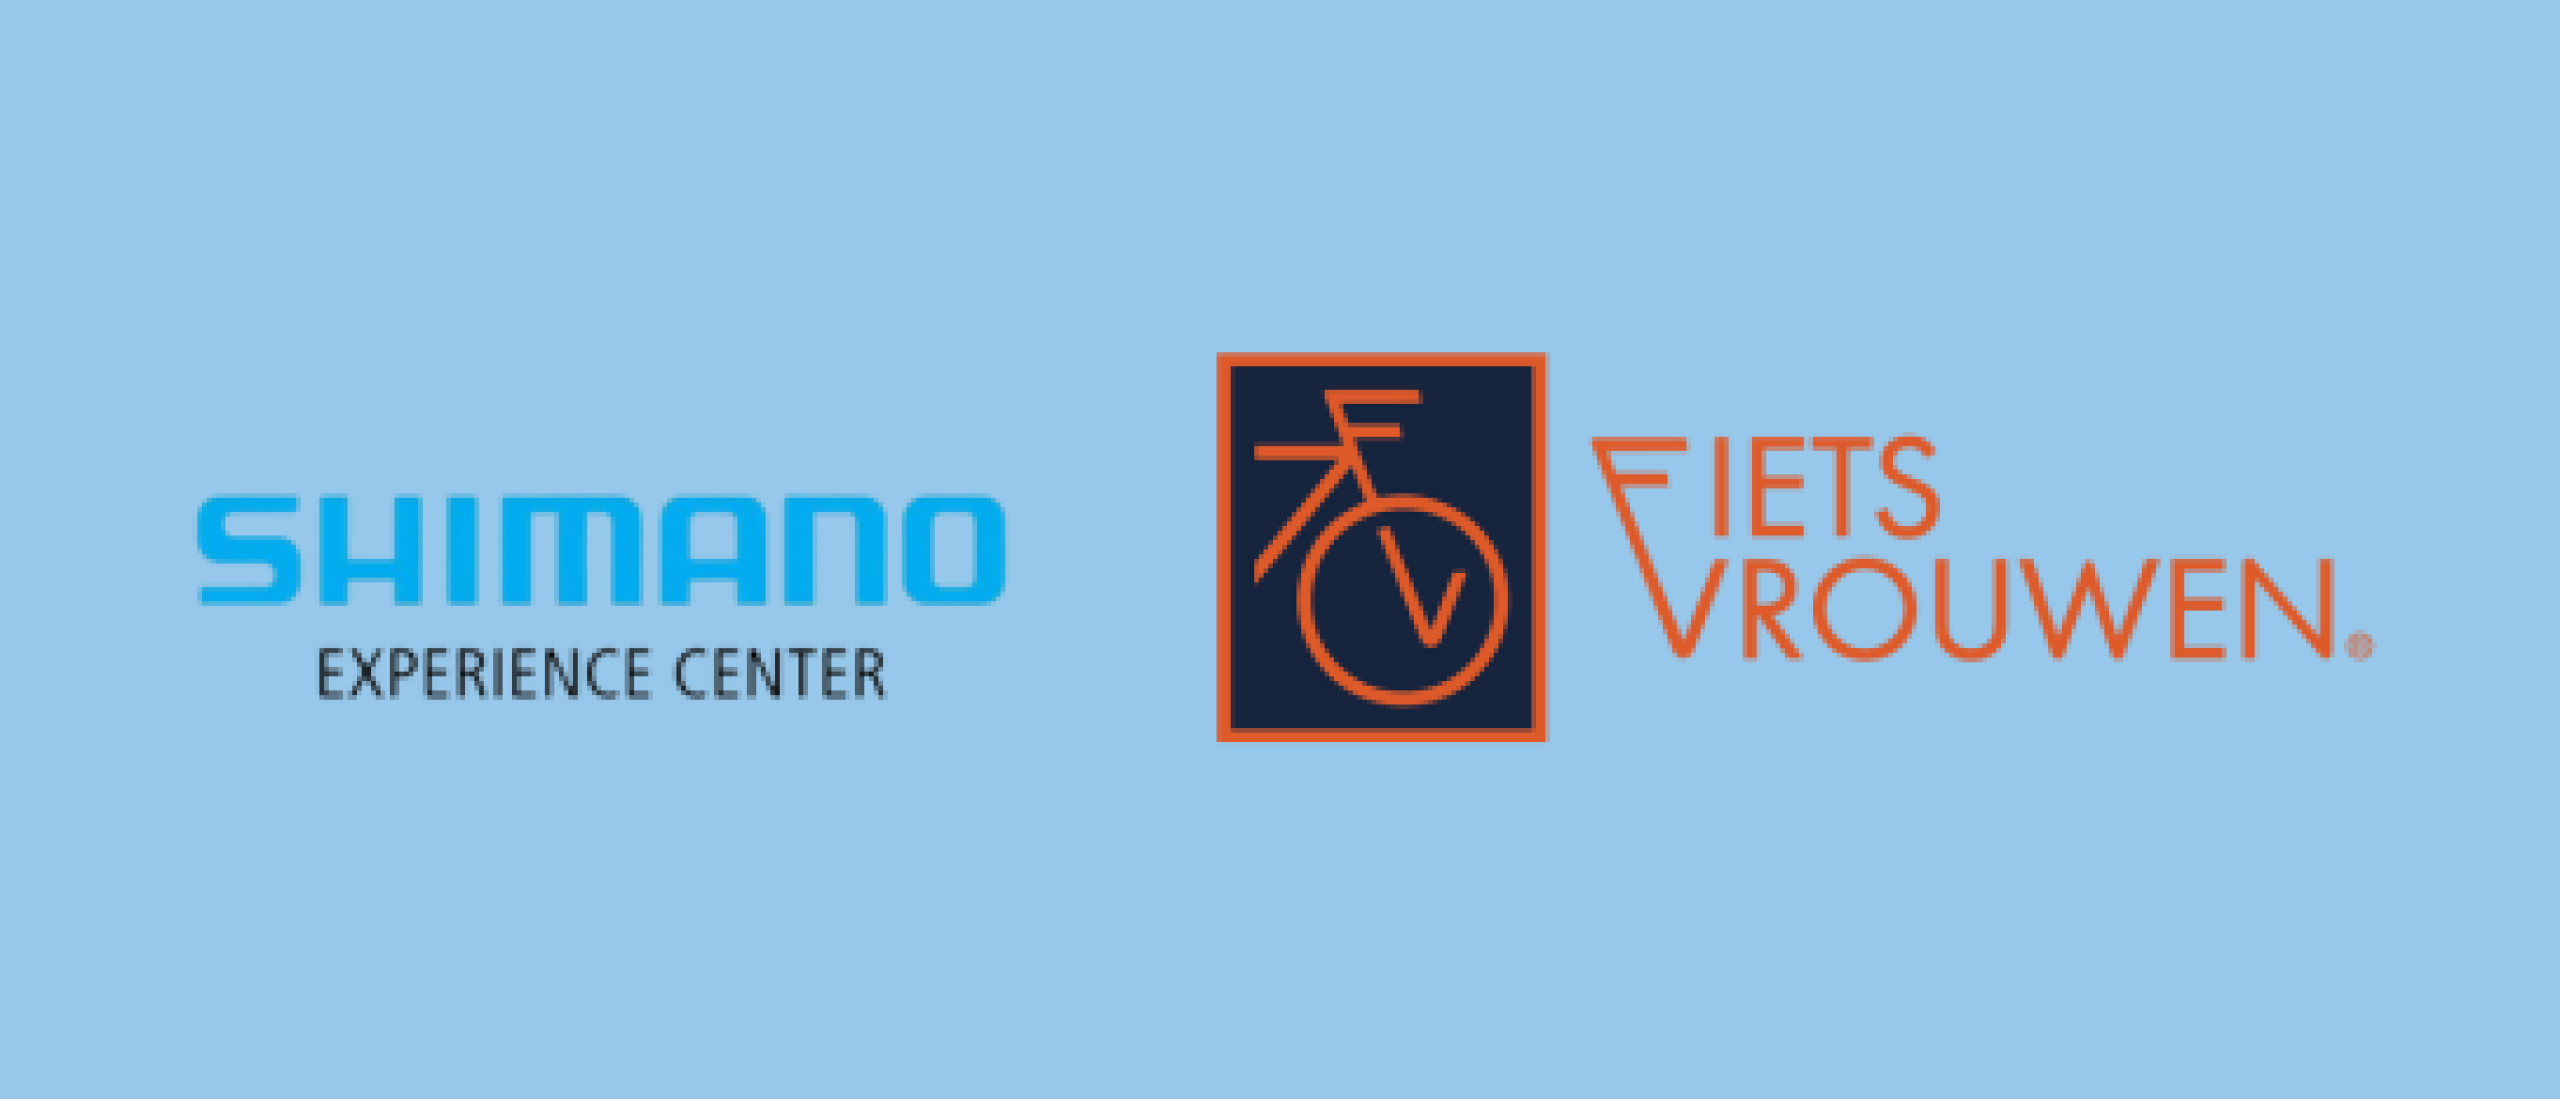 Nieuws: Fietsvrouwen en Shimano Experience Center bundelen krachten voor een unieke fietservaring